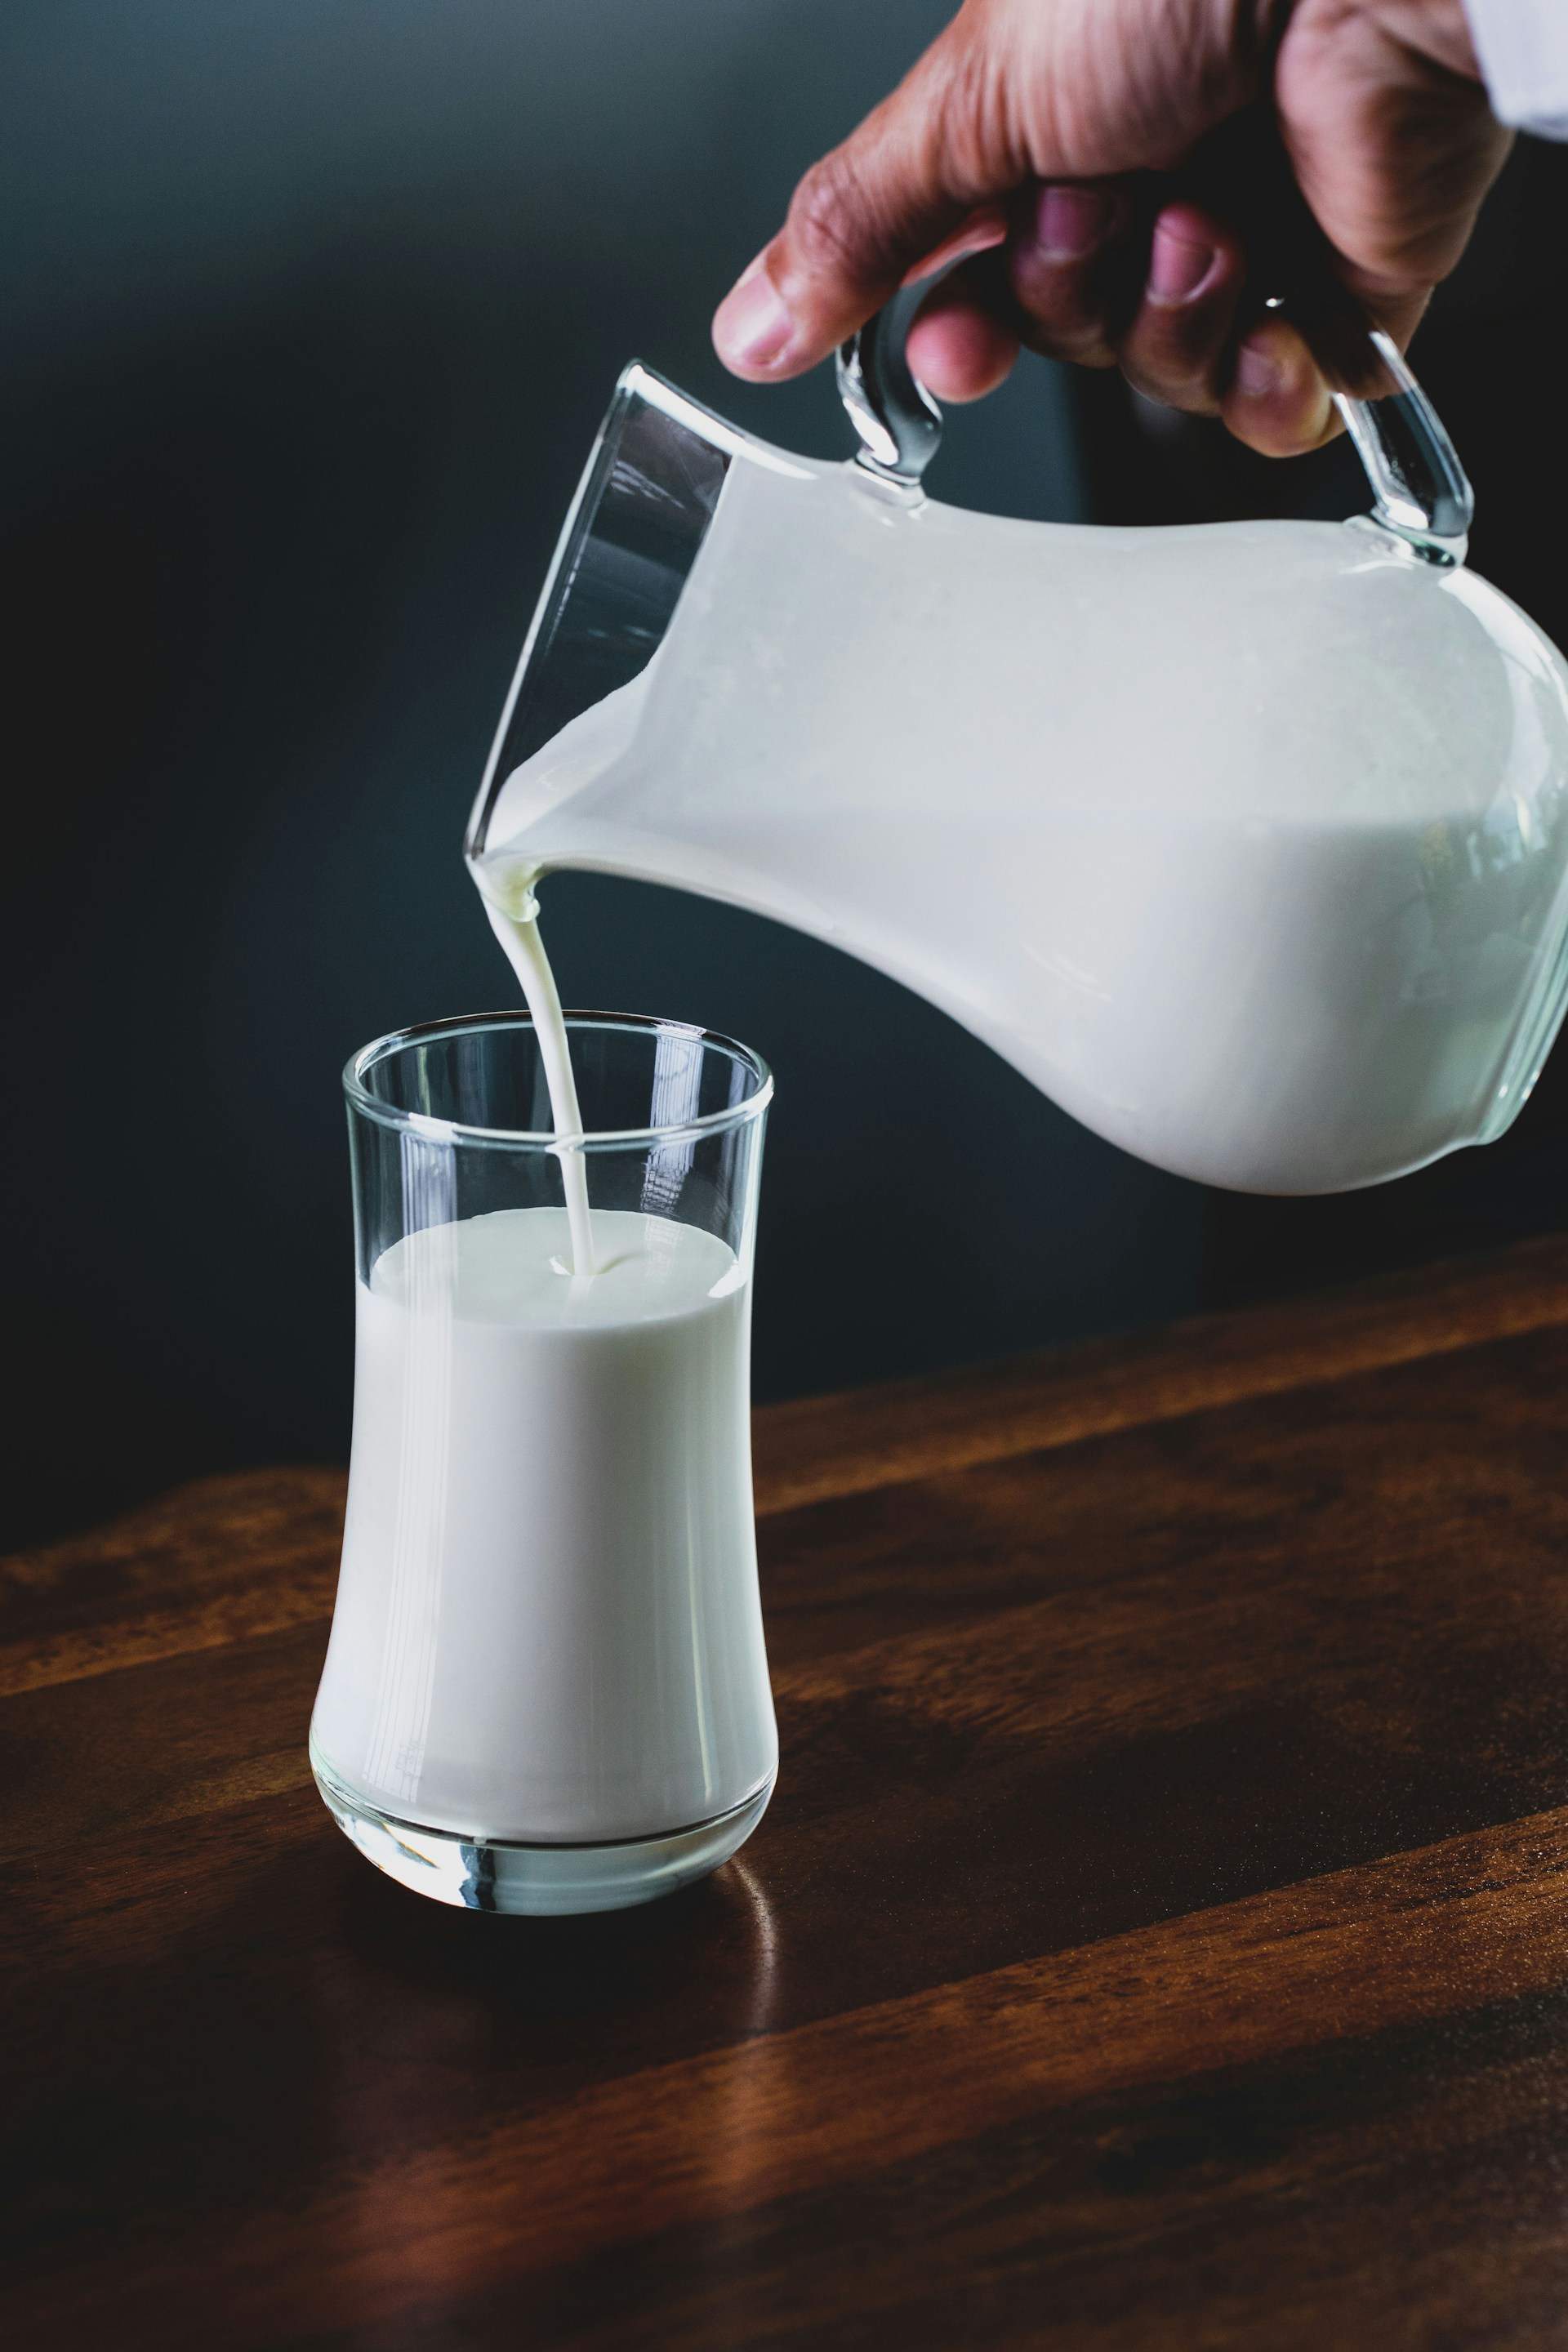 Crema de leche casera: la receta de crema líquida casera más fácil del mundo